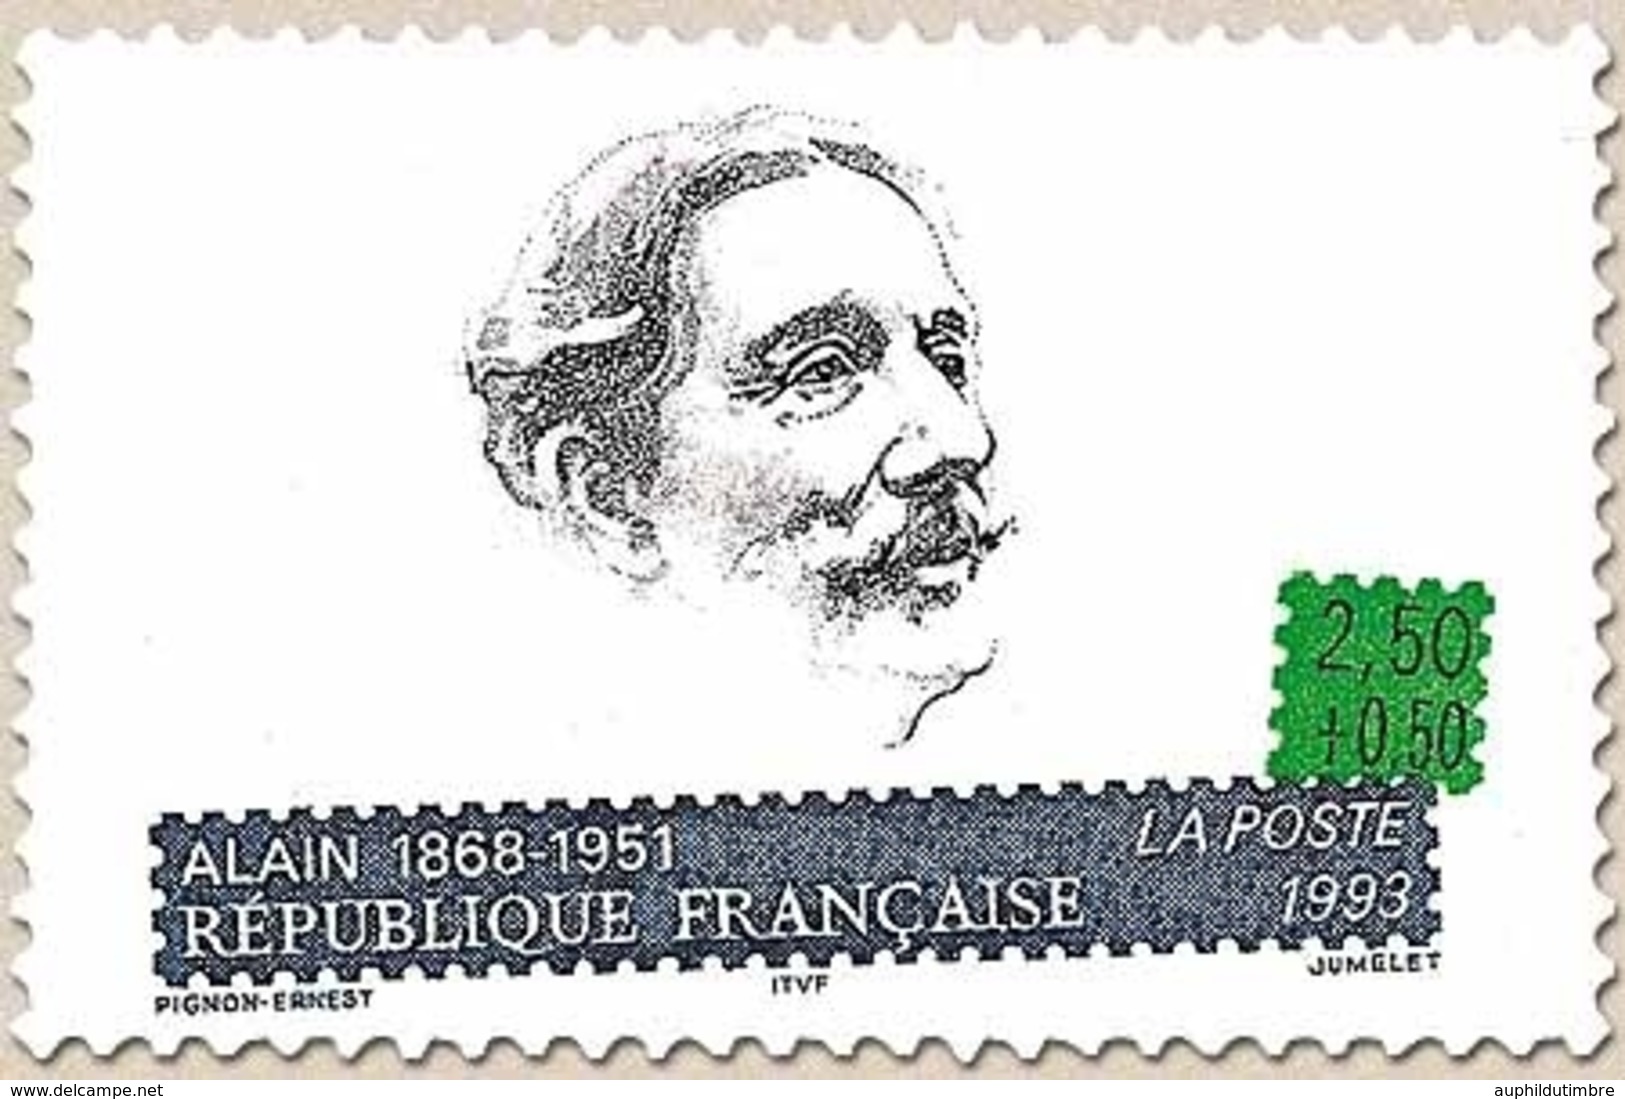 Personnages Célèbres. Ecrivains Français. Emile Chartier, Dit Alain (1868-1951)  2f.50 + 50c. Y2800 - Nuovi